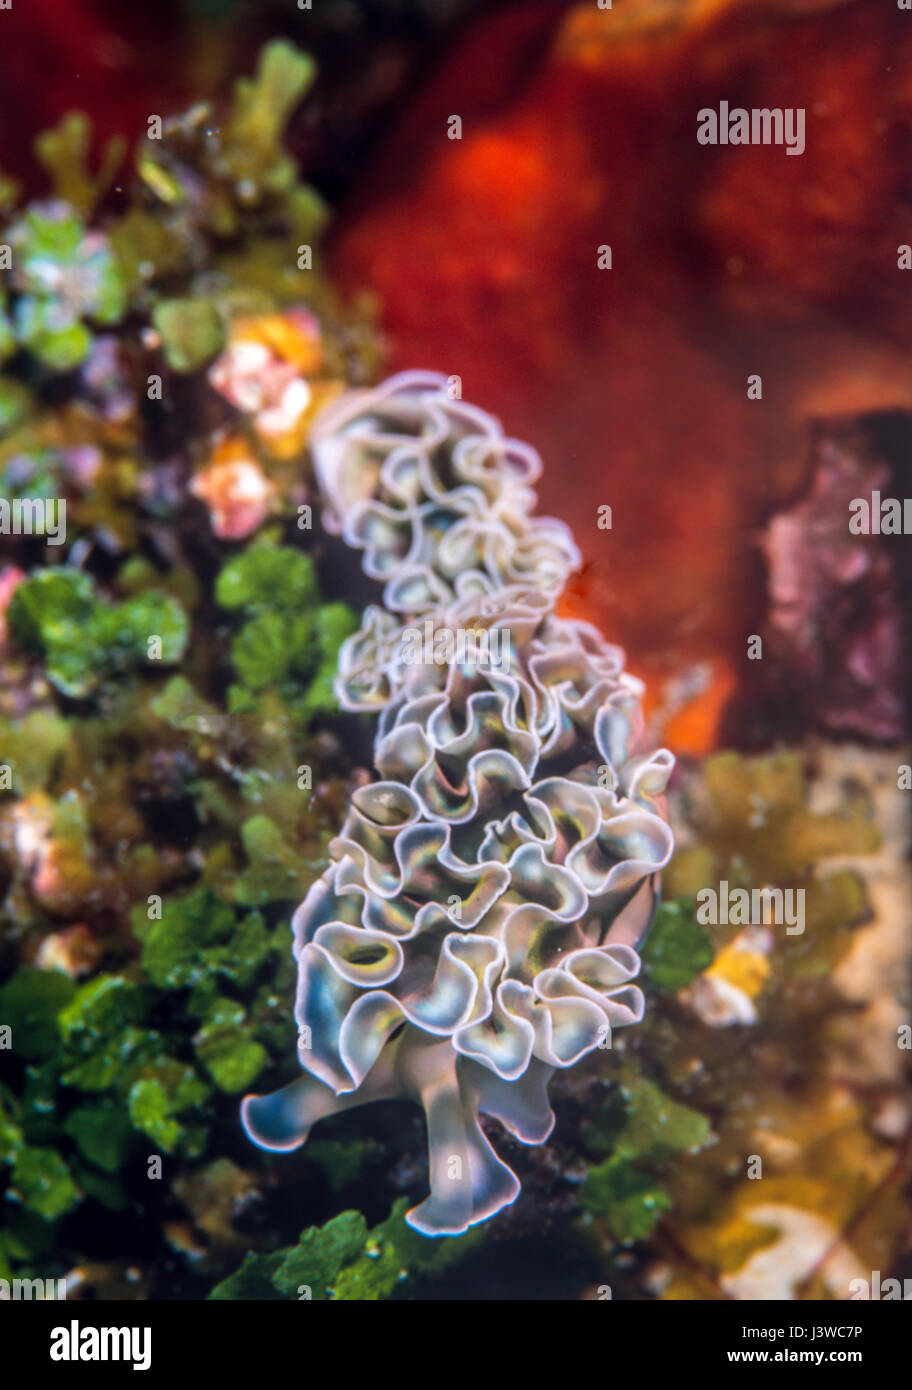 Elysia crispata, common name the lettuce sea slug, is a large and colorful species of sea slug, Stock Photo